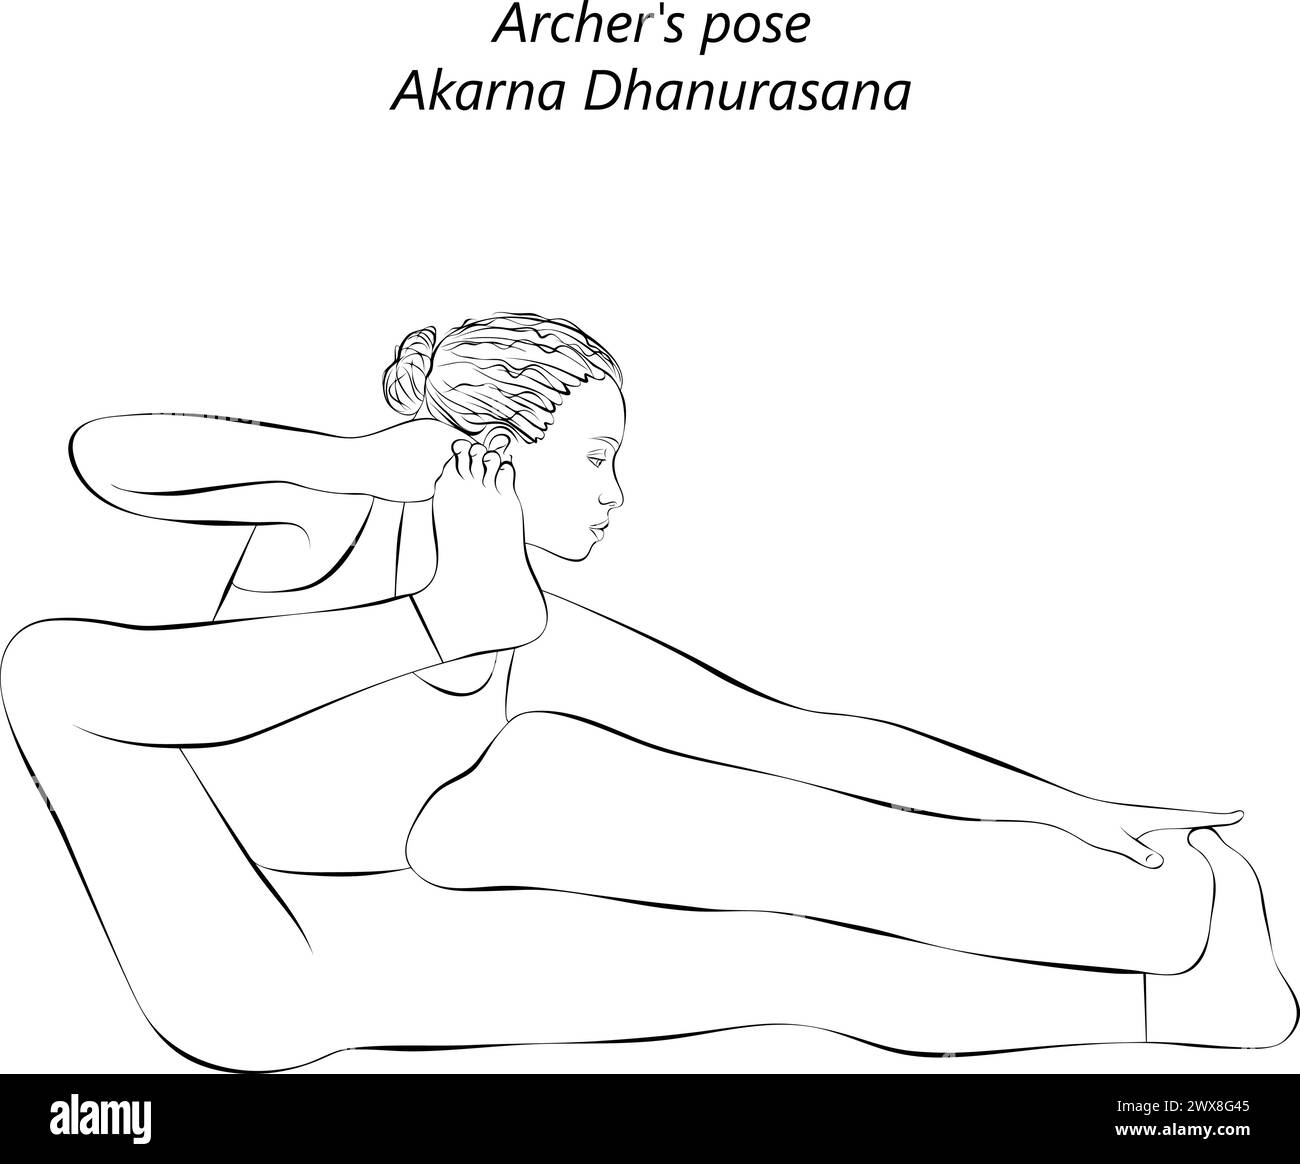 Croquis de femme faisant du yoga Akarna Dhanurasana. Pose d'Archer. Posture de l'arc et de la flèche ou posture de l'arc de tir. Illustration vectorielle isolée. Illustration de Vecteur